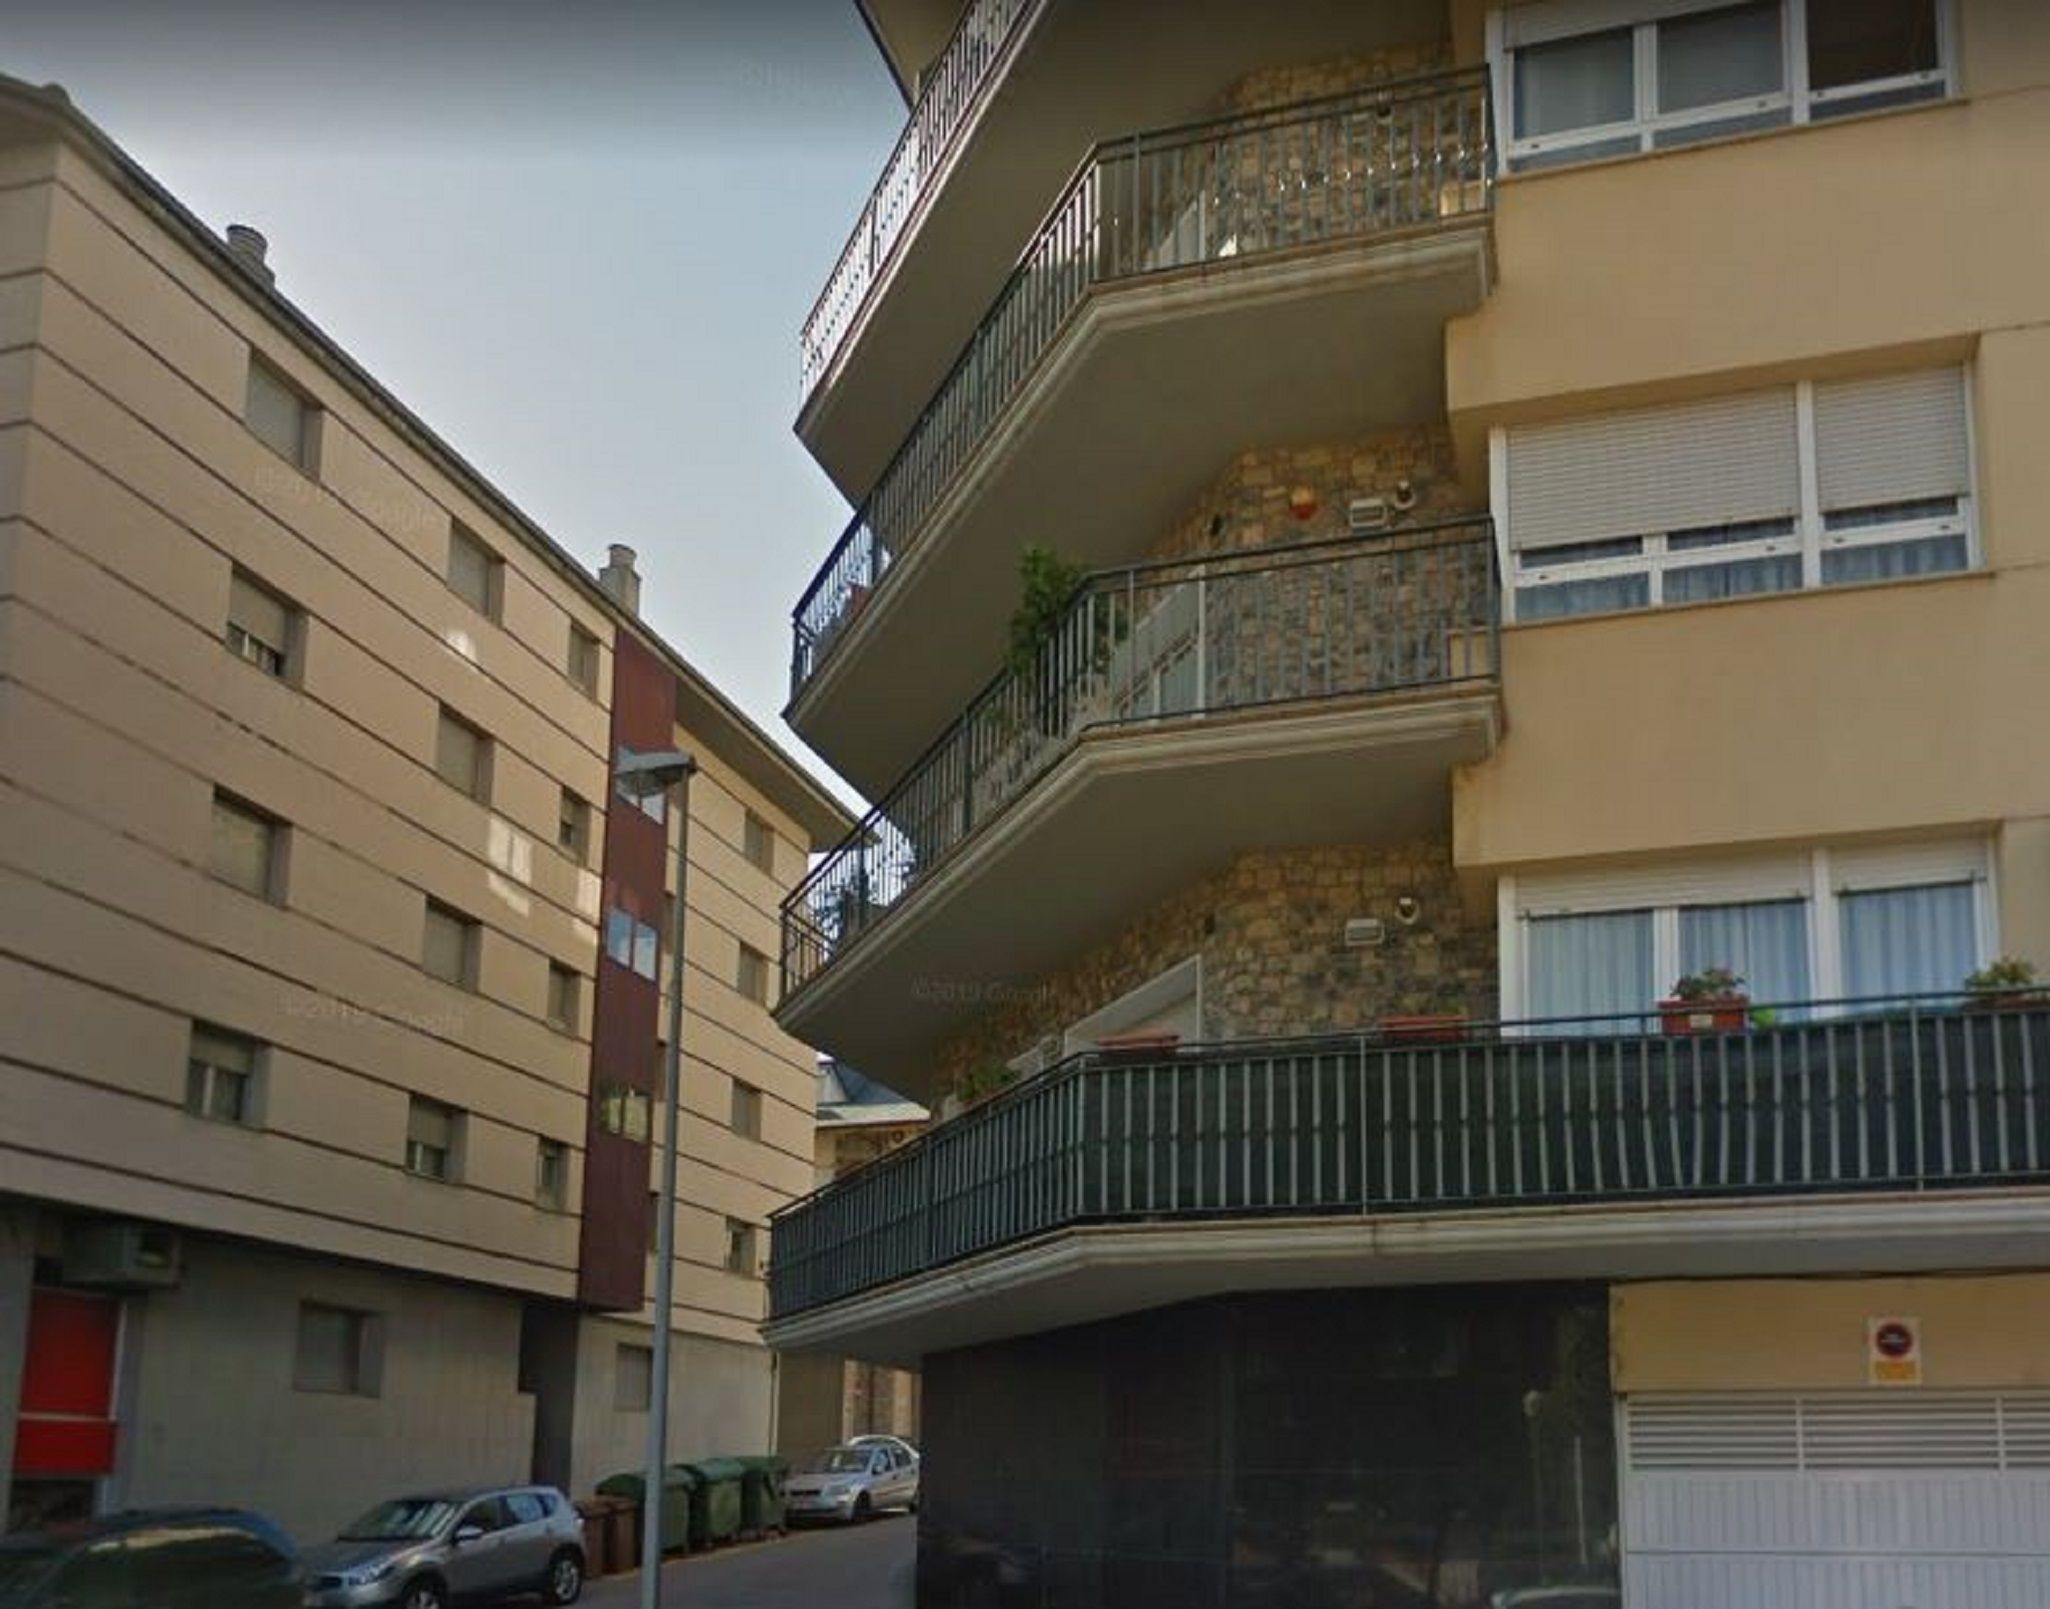 Seu d'Urgell / Google Maps